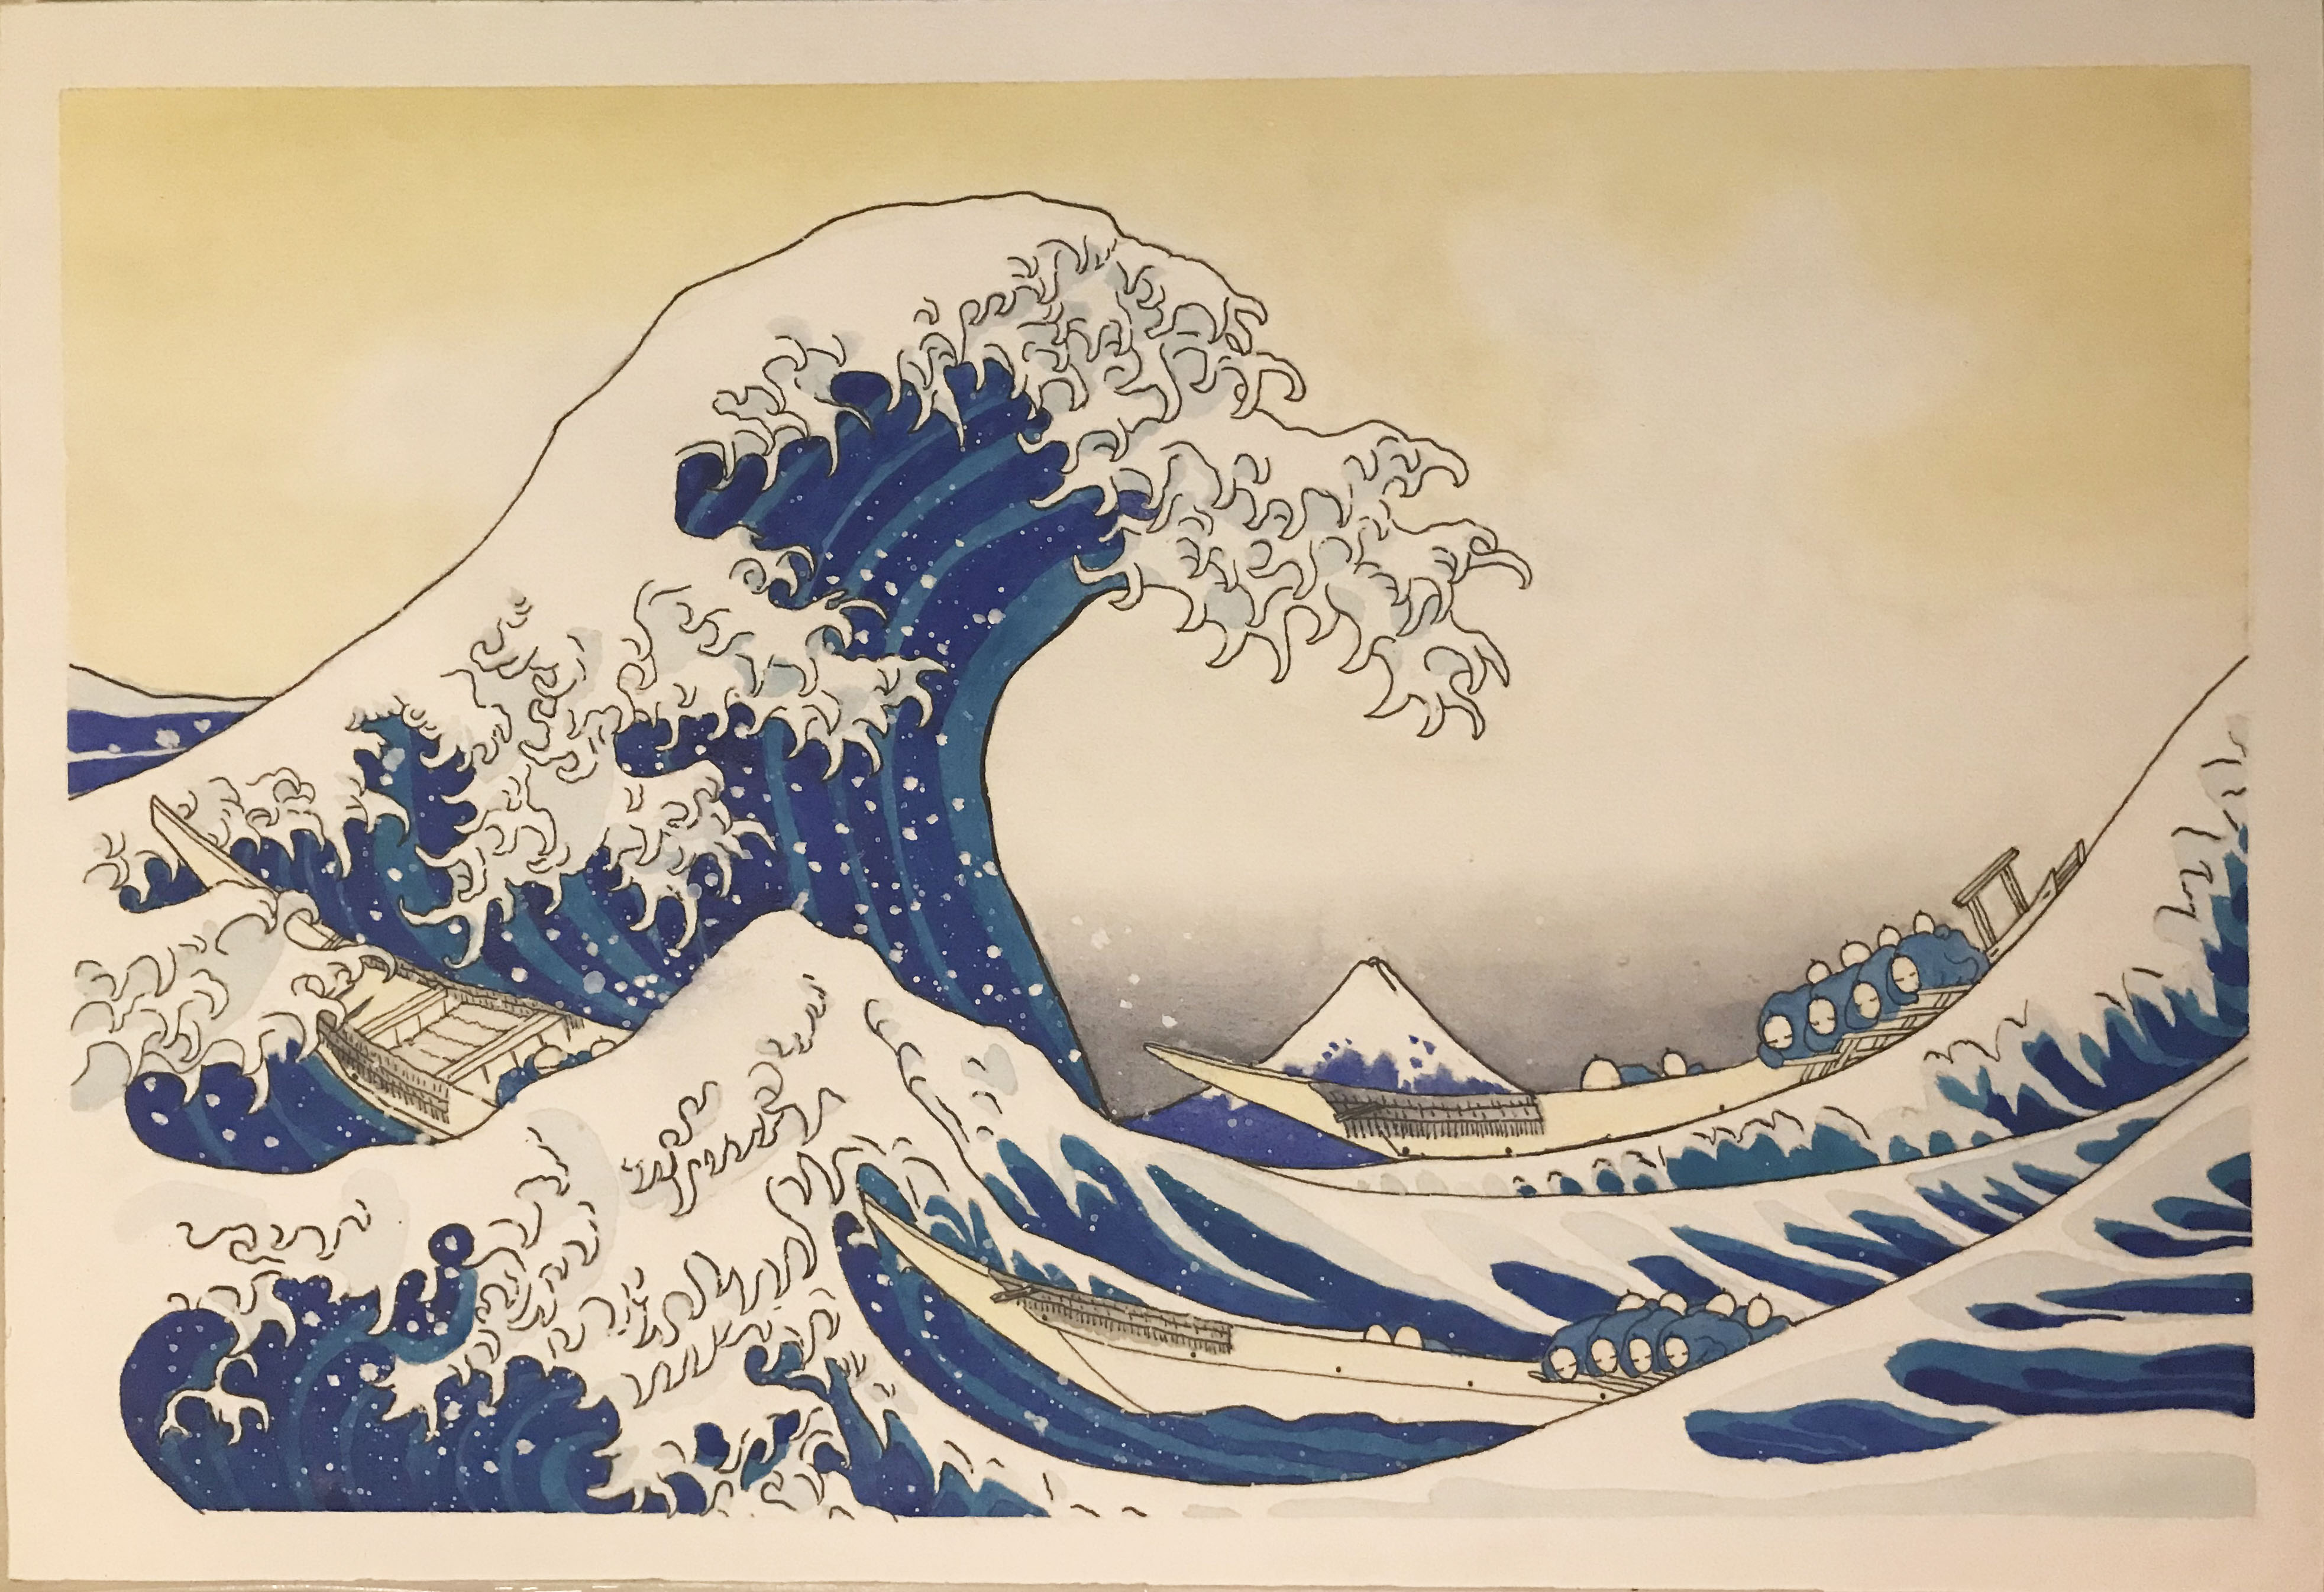 神奈川冲浪里超清壁纸图片